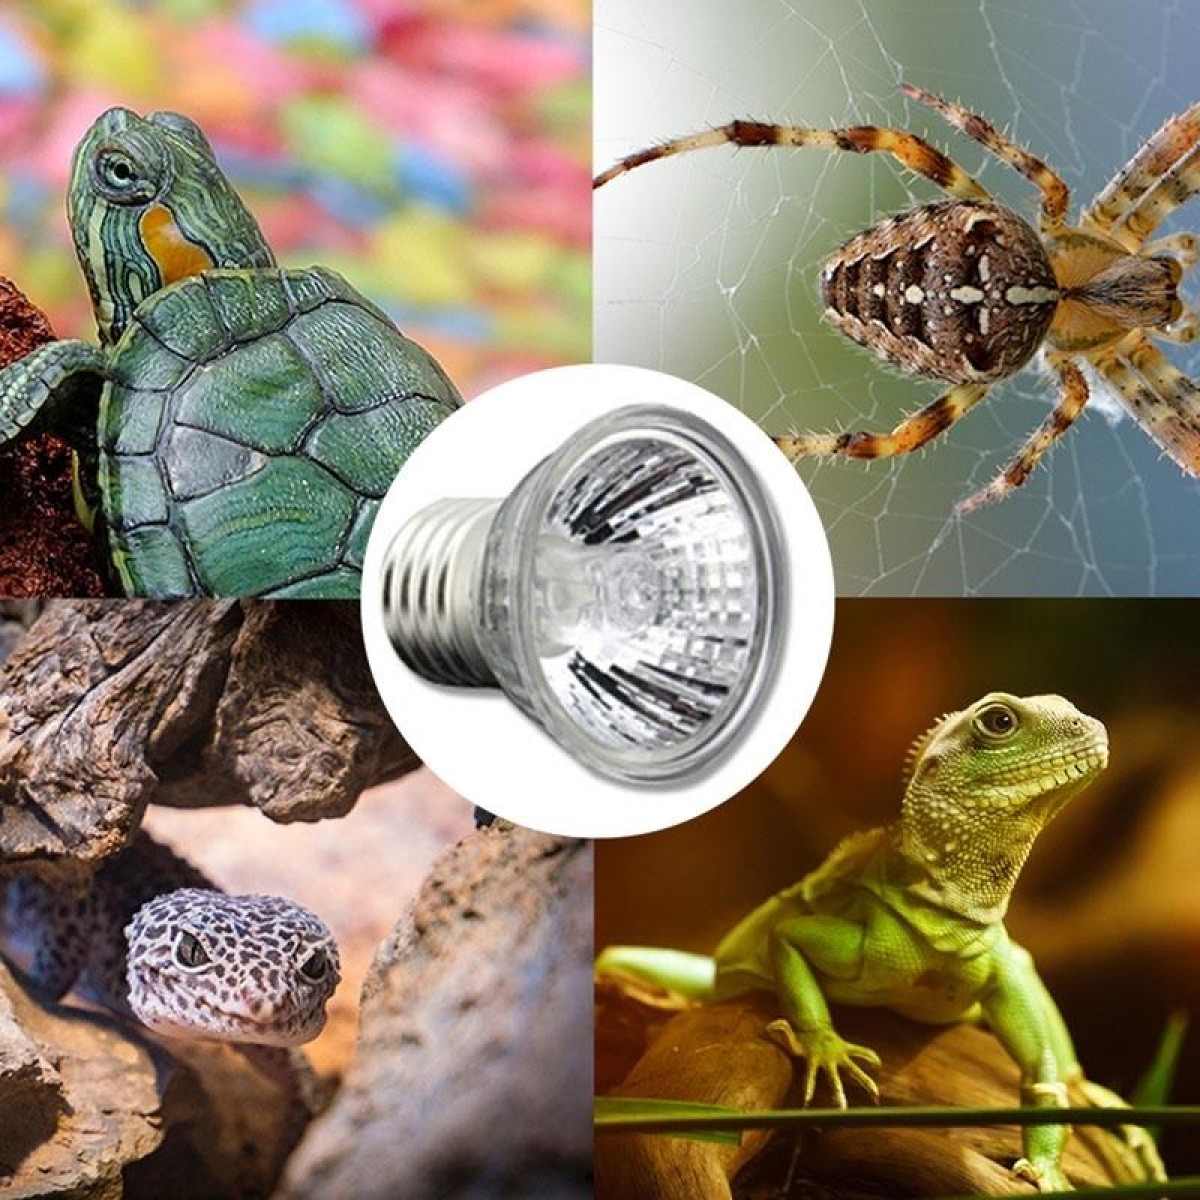 UVA+UVB Full Spectrum Solar Reptile Lamp Lizard Light Turtle Basking Lamp, Specification: 75W